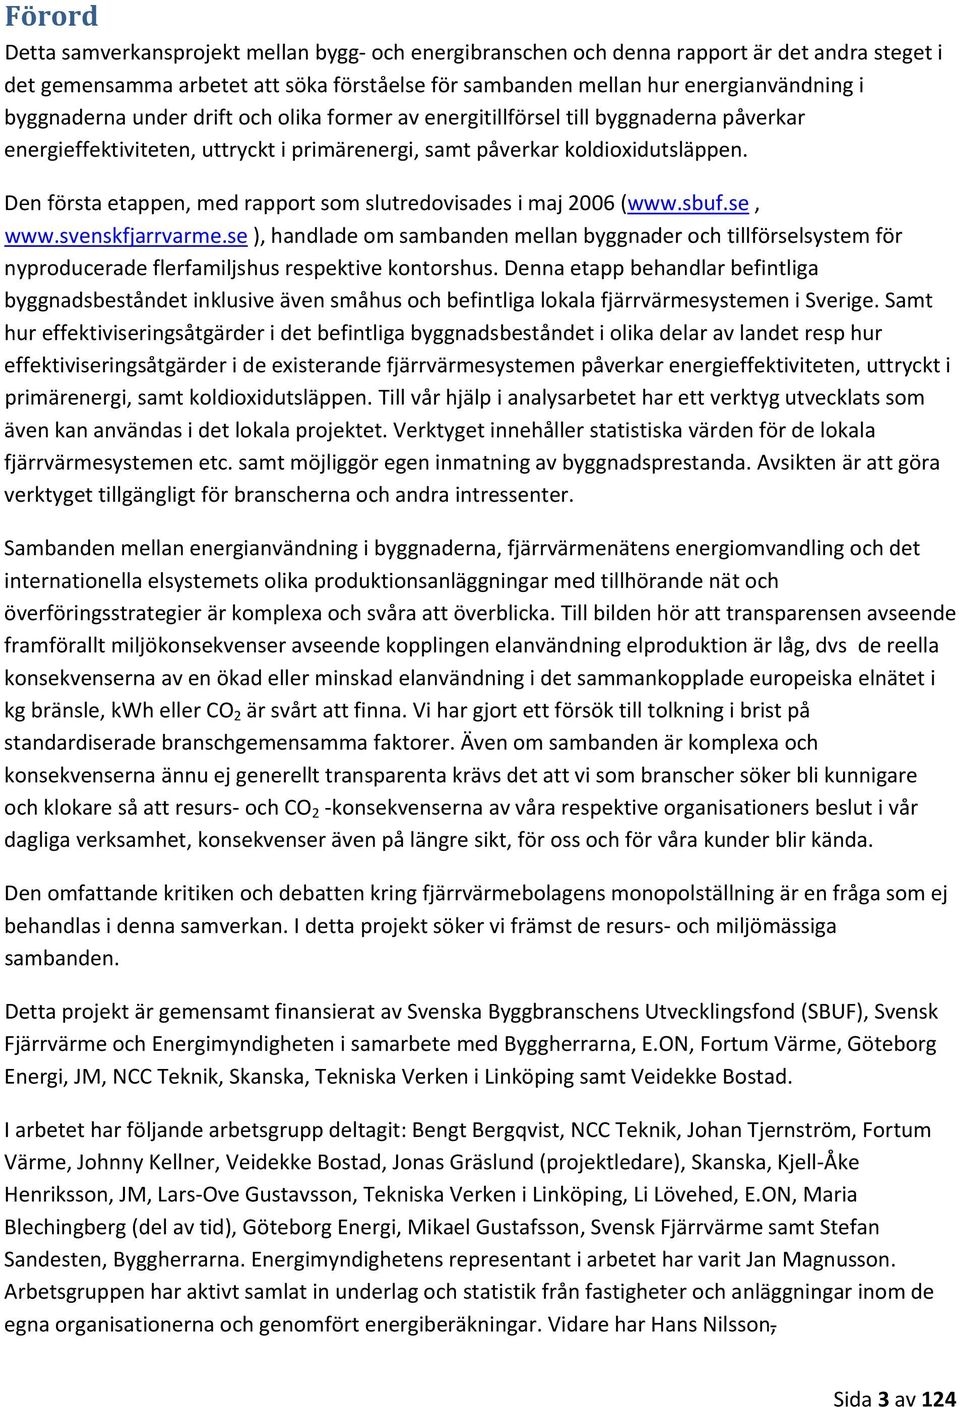 Den första etappen, med rapport som slutredovisades i maj 2006 (www.sbuf.se, www.svenskfjarrvarme.